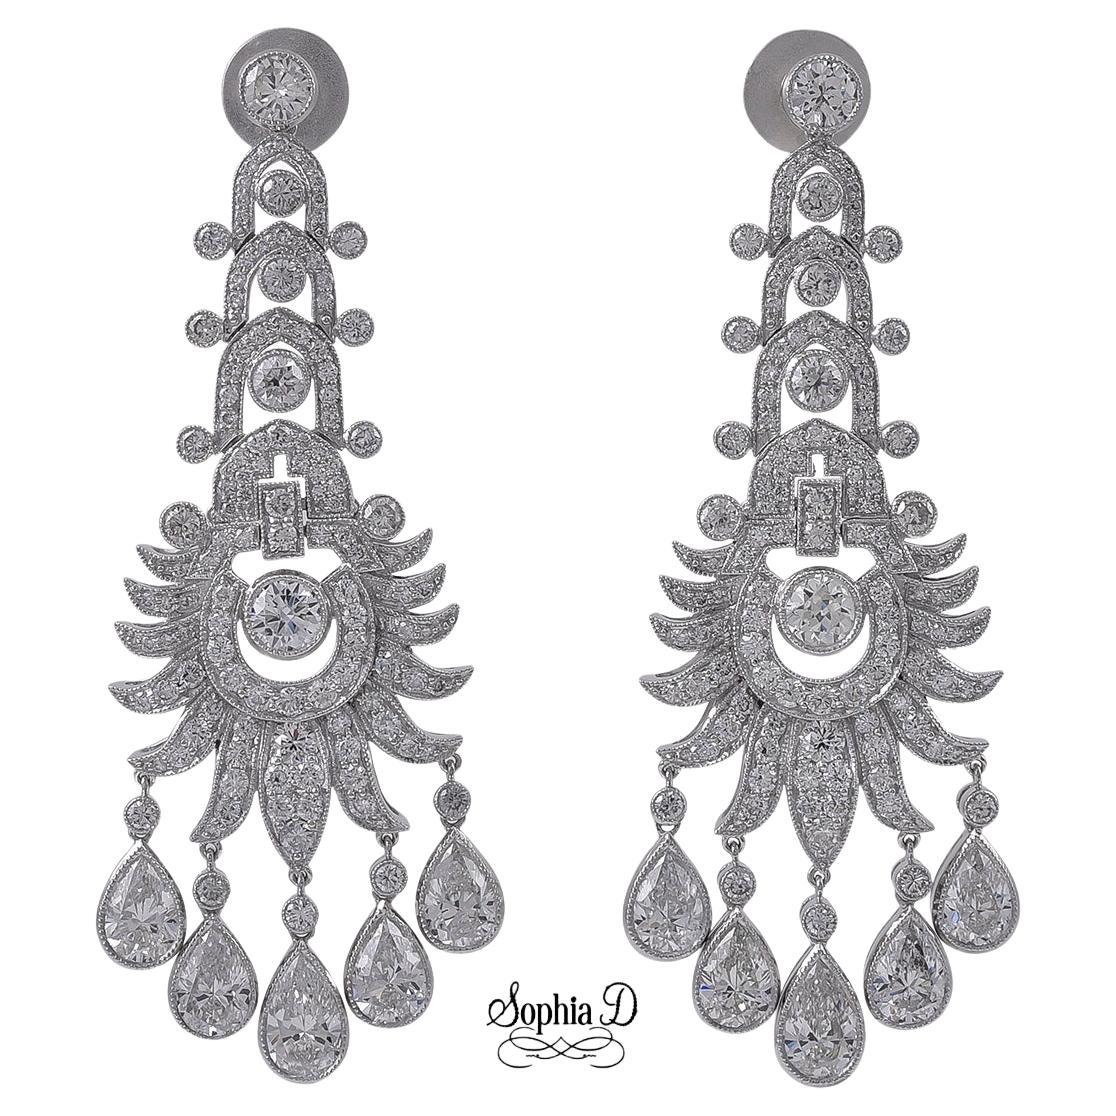 Sophia D. All Diamond Earrings in Platinum For Sale